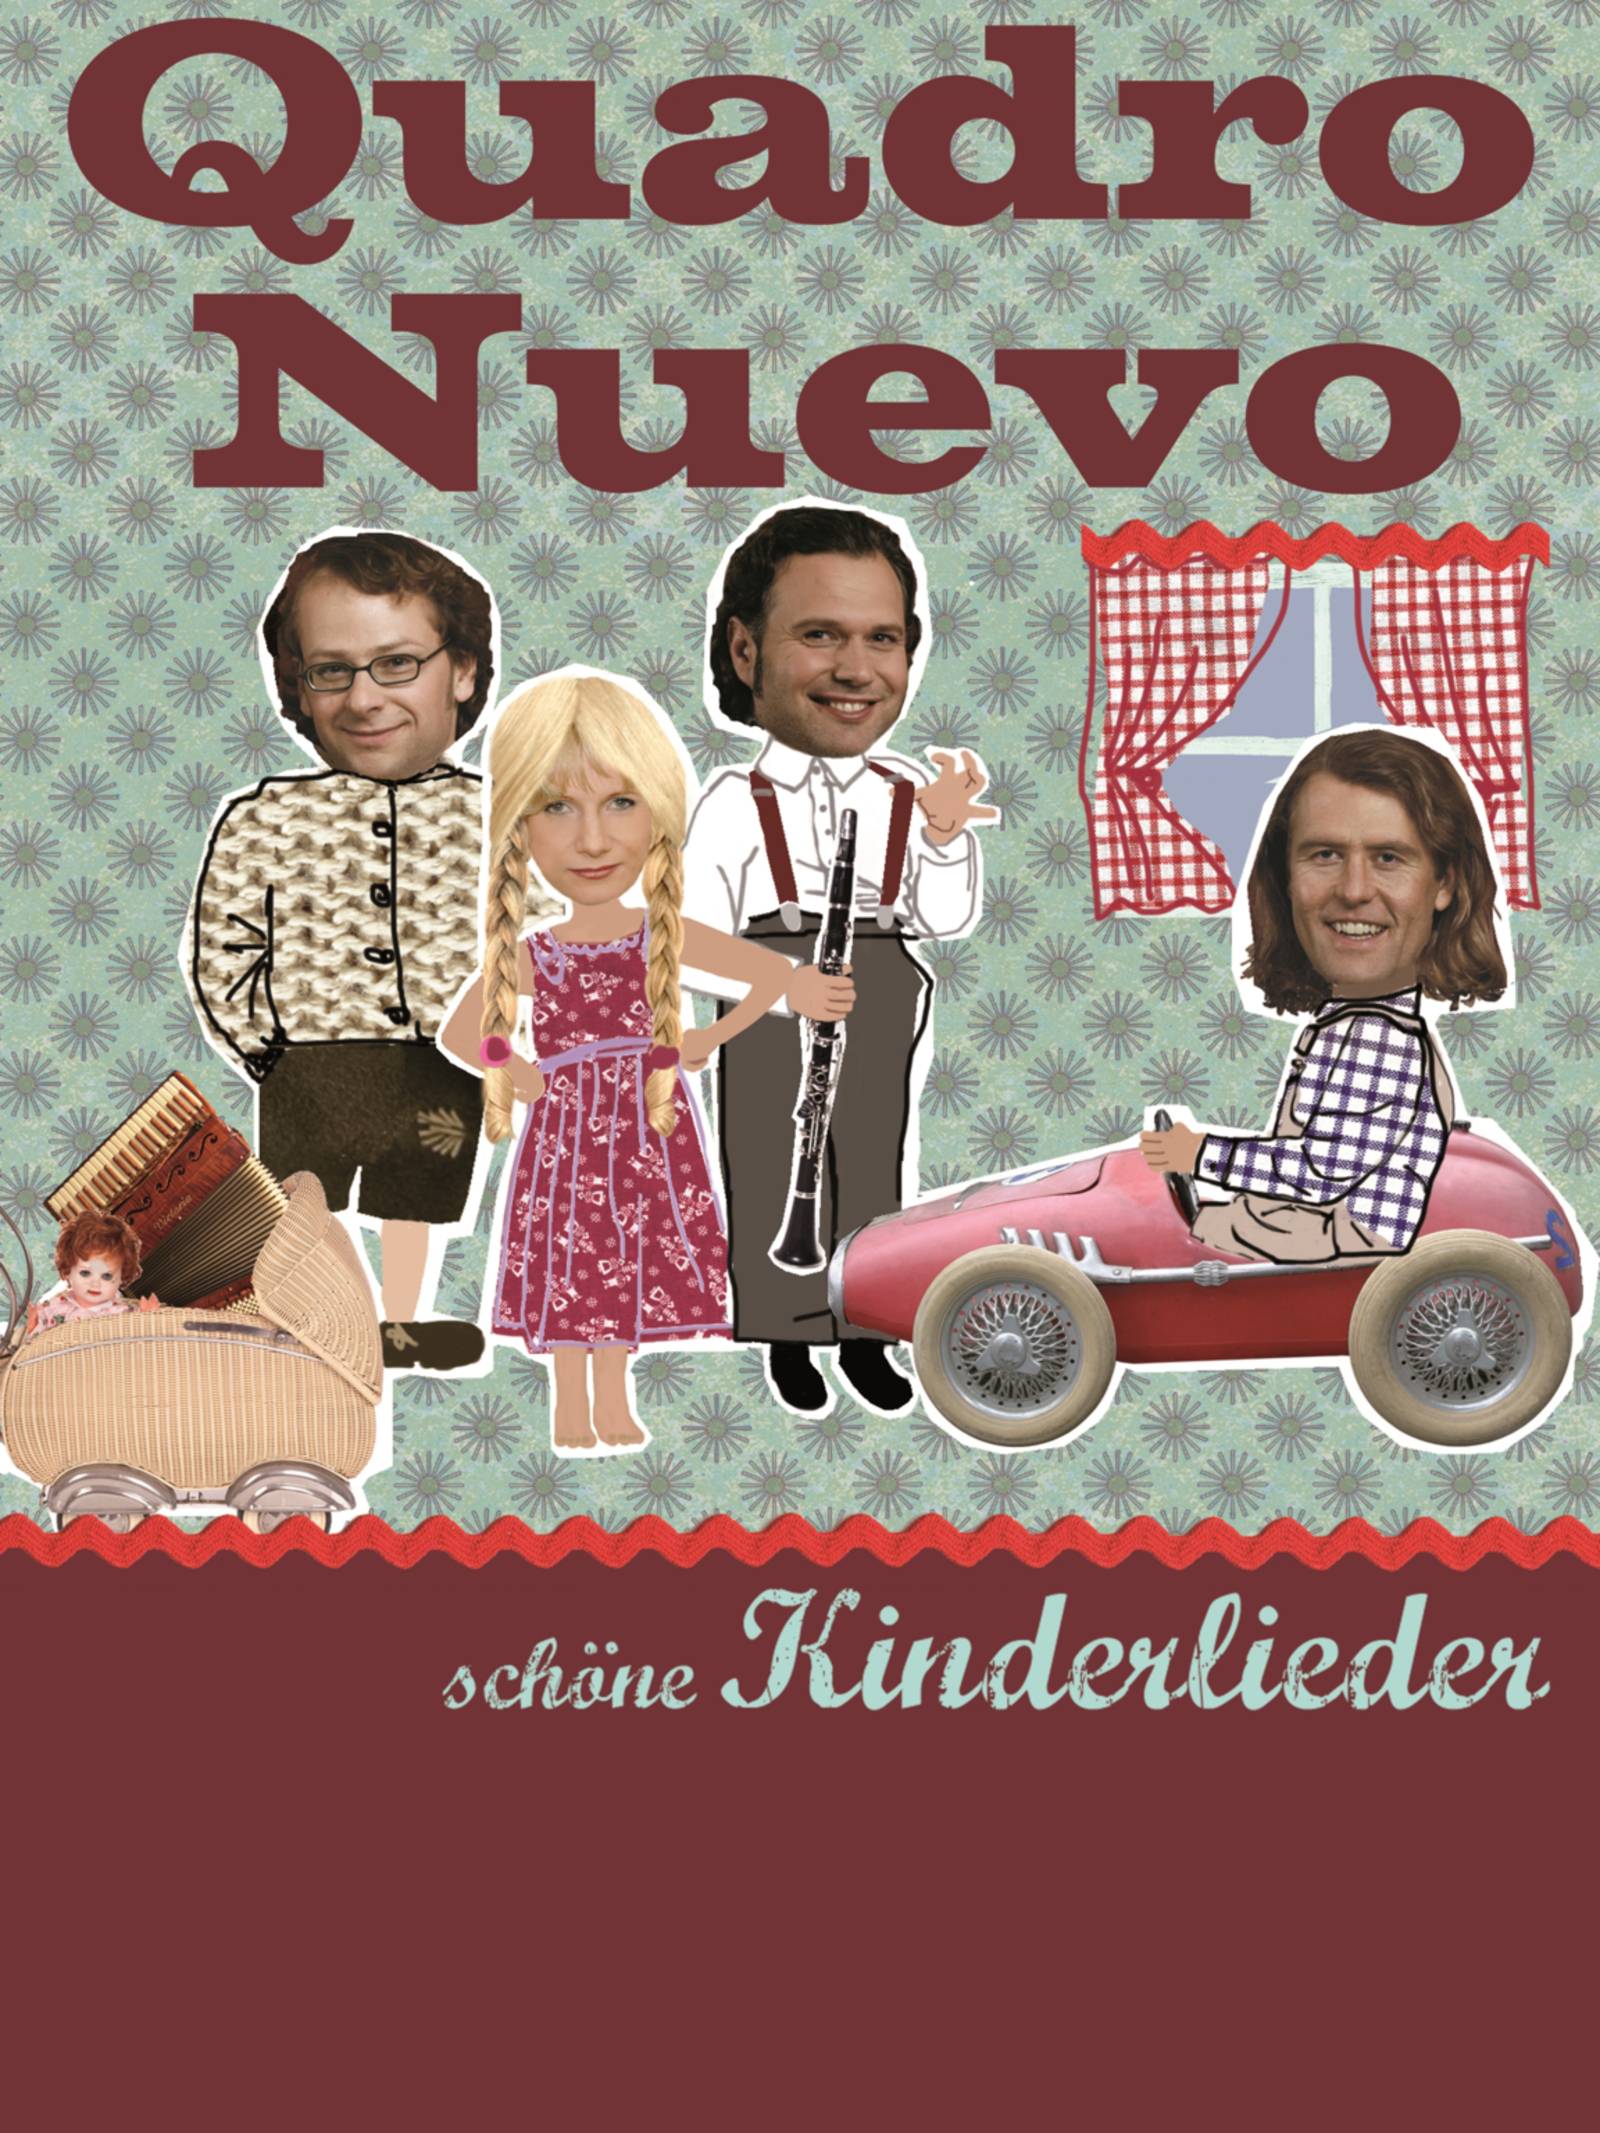 Collage aus Fotos, Text und Zeichnungen: Zwei Männer nehmen eine Frau in ihre Mitte, ein dritter Mann sitzt in einem Spielzeugauto. Text: "Quadro Nuevo" "schöne Kinderlieder".